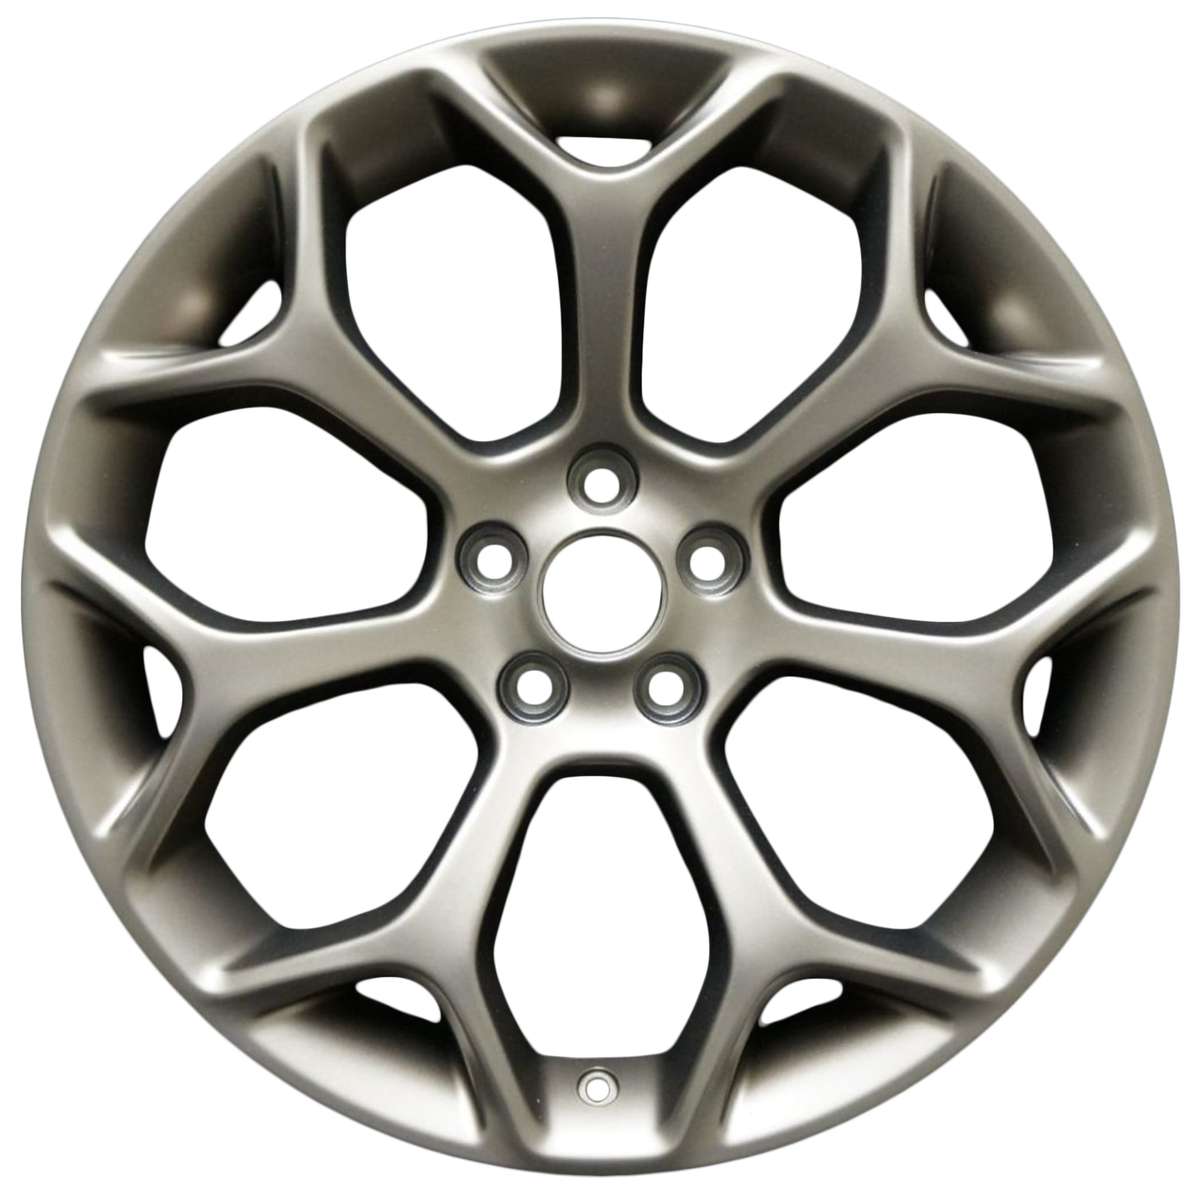 2015 Chrysler 300 20" OEM Wheel Rim W2603MC